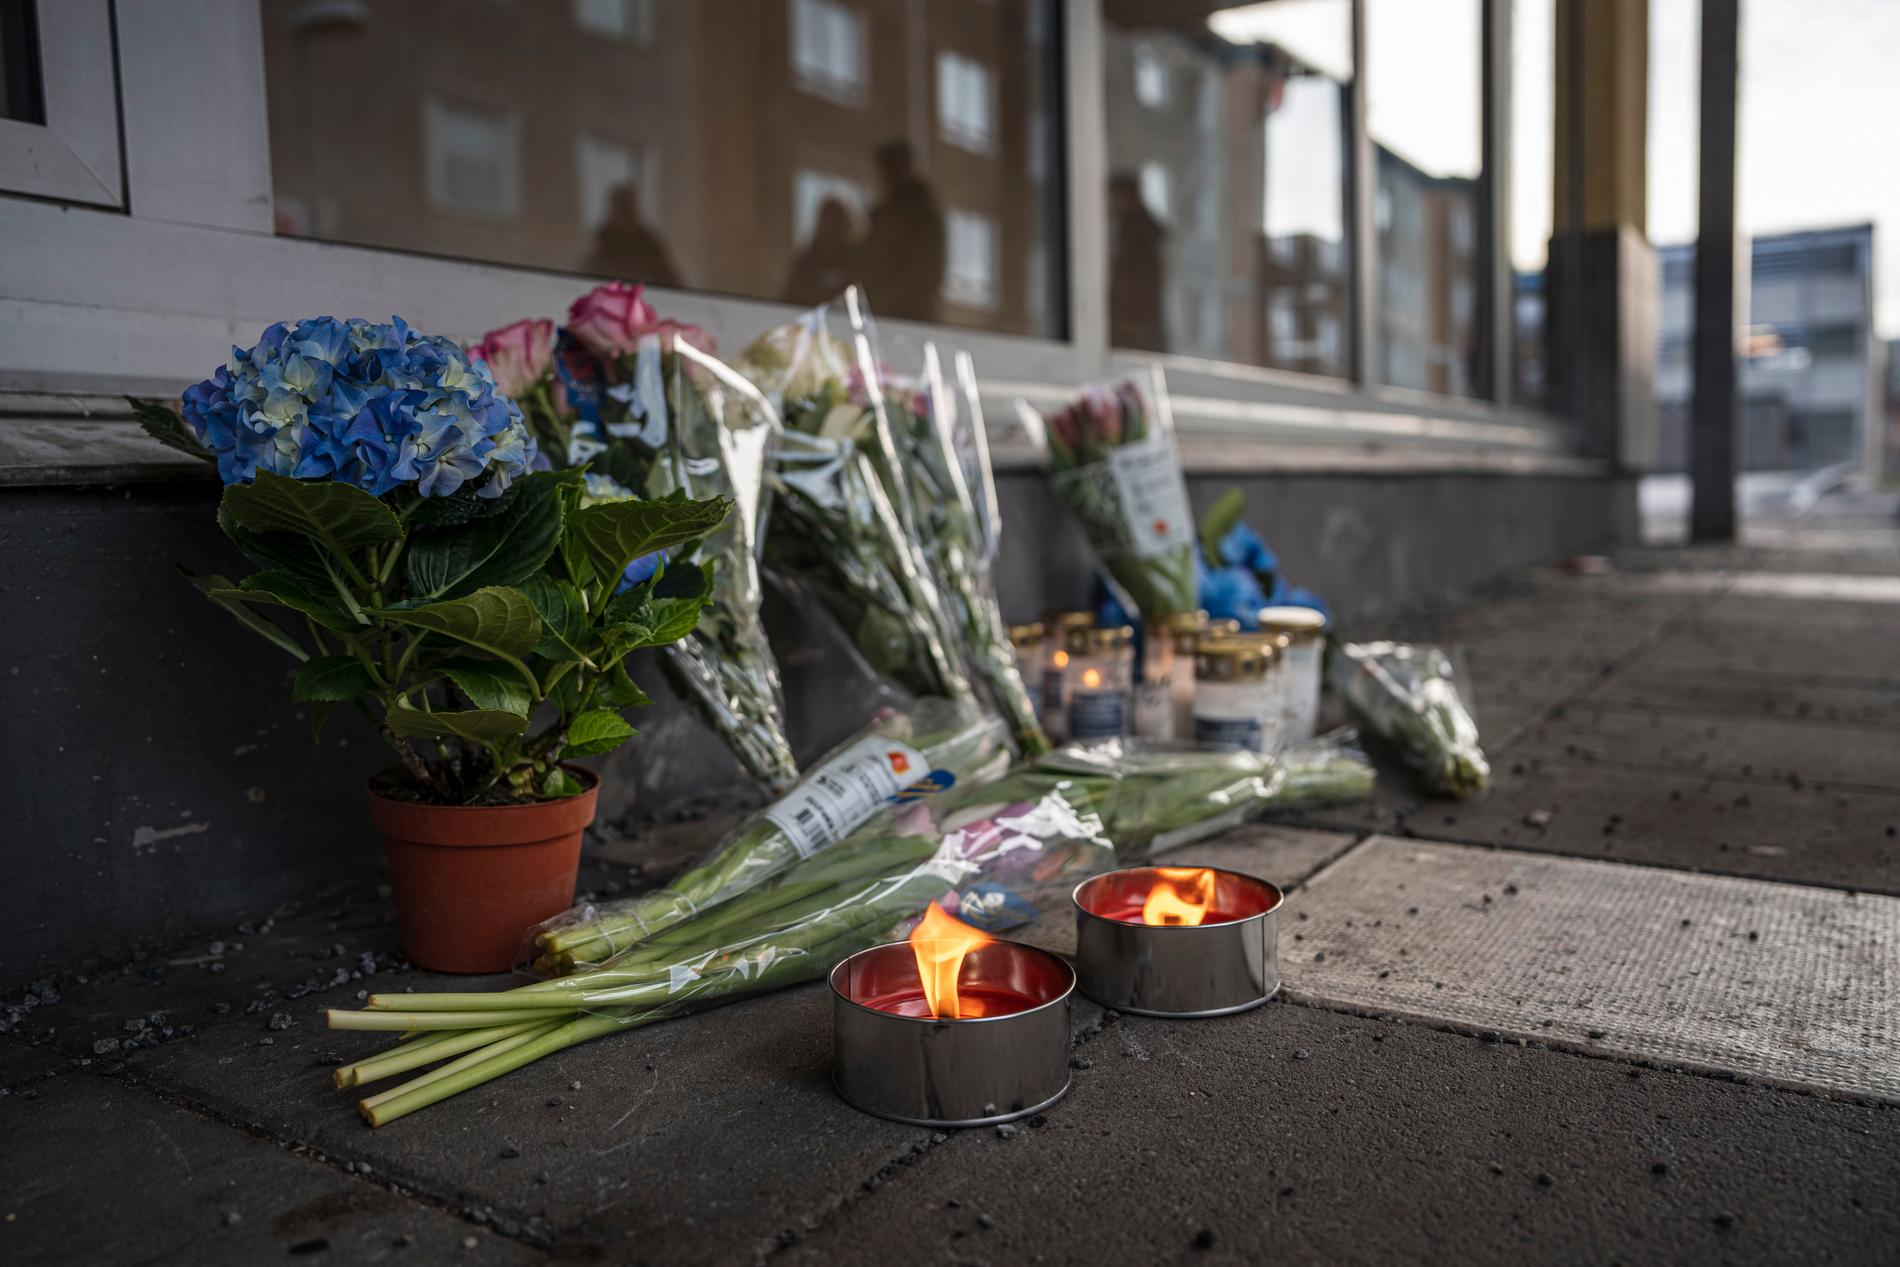 En minnesplats med blommor och ljus i Skogås centrum, dagen efter mordet.